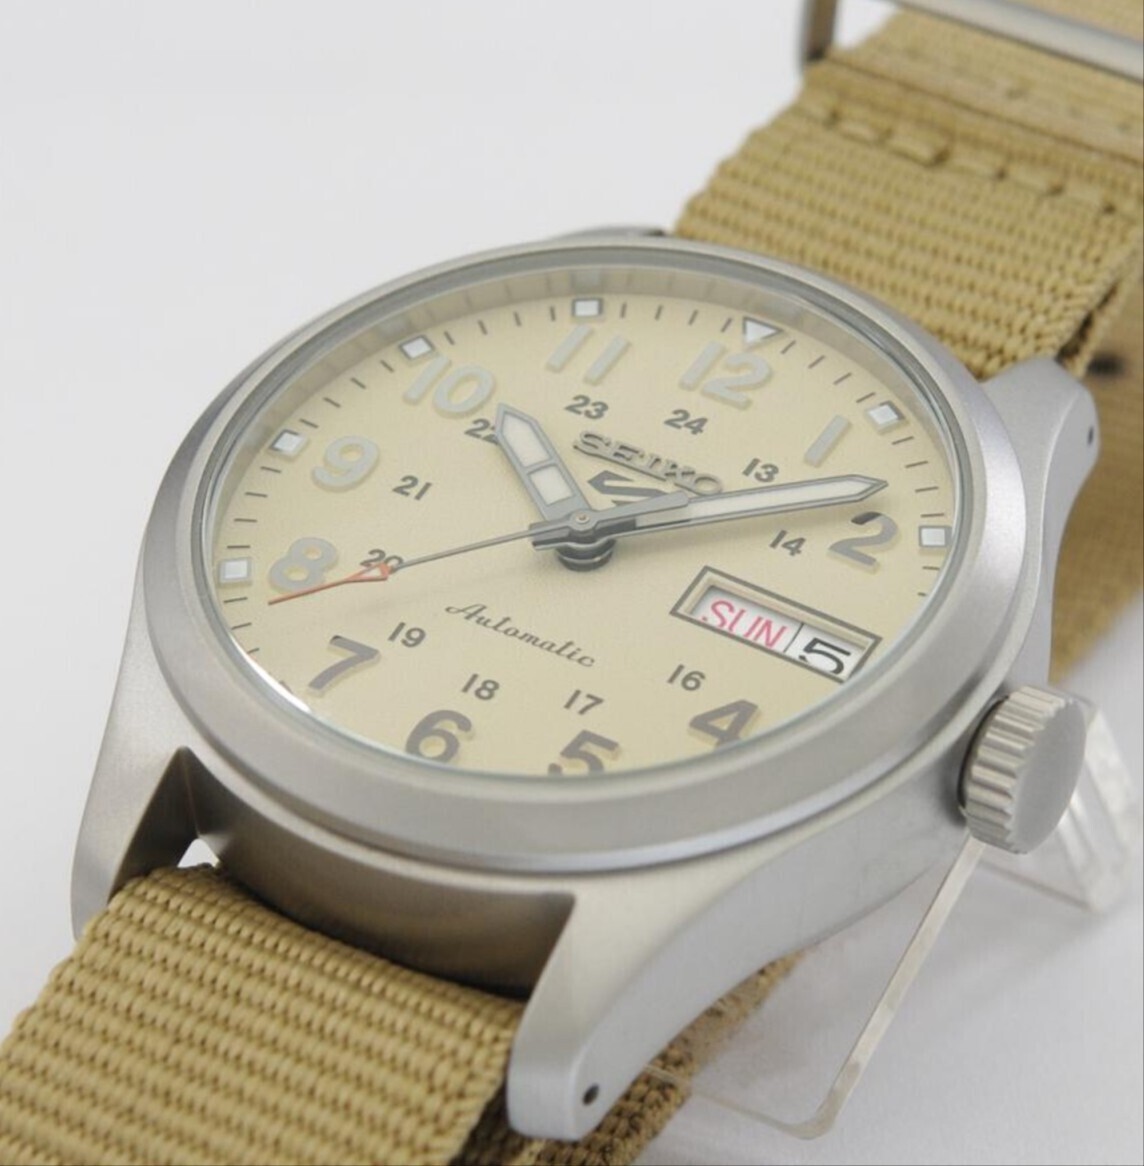 SEIKO セイコー5 スポーツ 日本製 機械式腕時計 海外モデル 自動巻き(手巻付き)カーキ/クリーム SRPJ83K1 逆輸入品　ミリタリー 箱無し発送_画像2